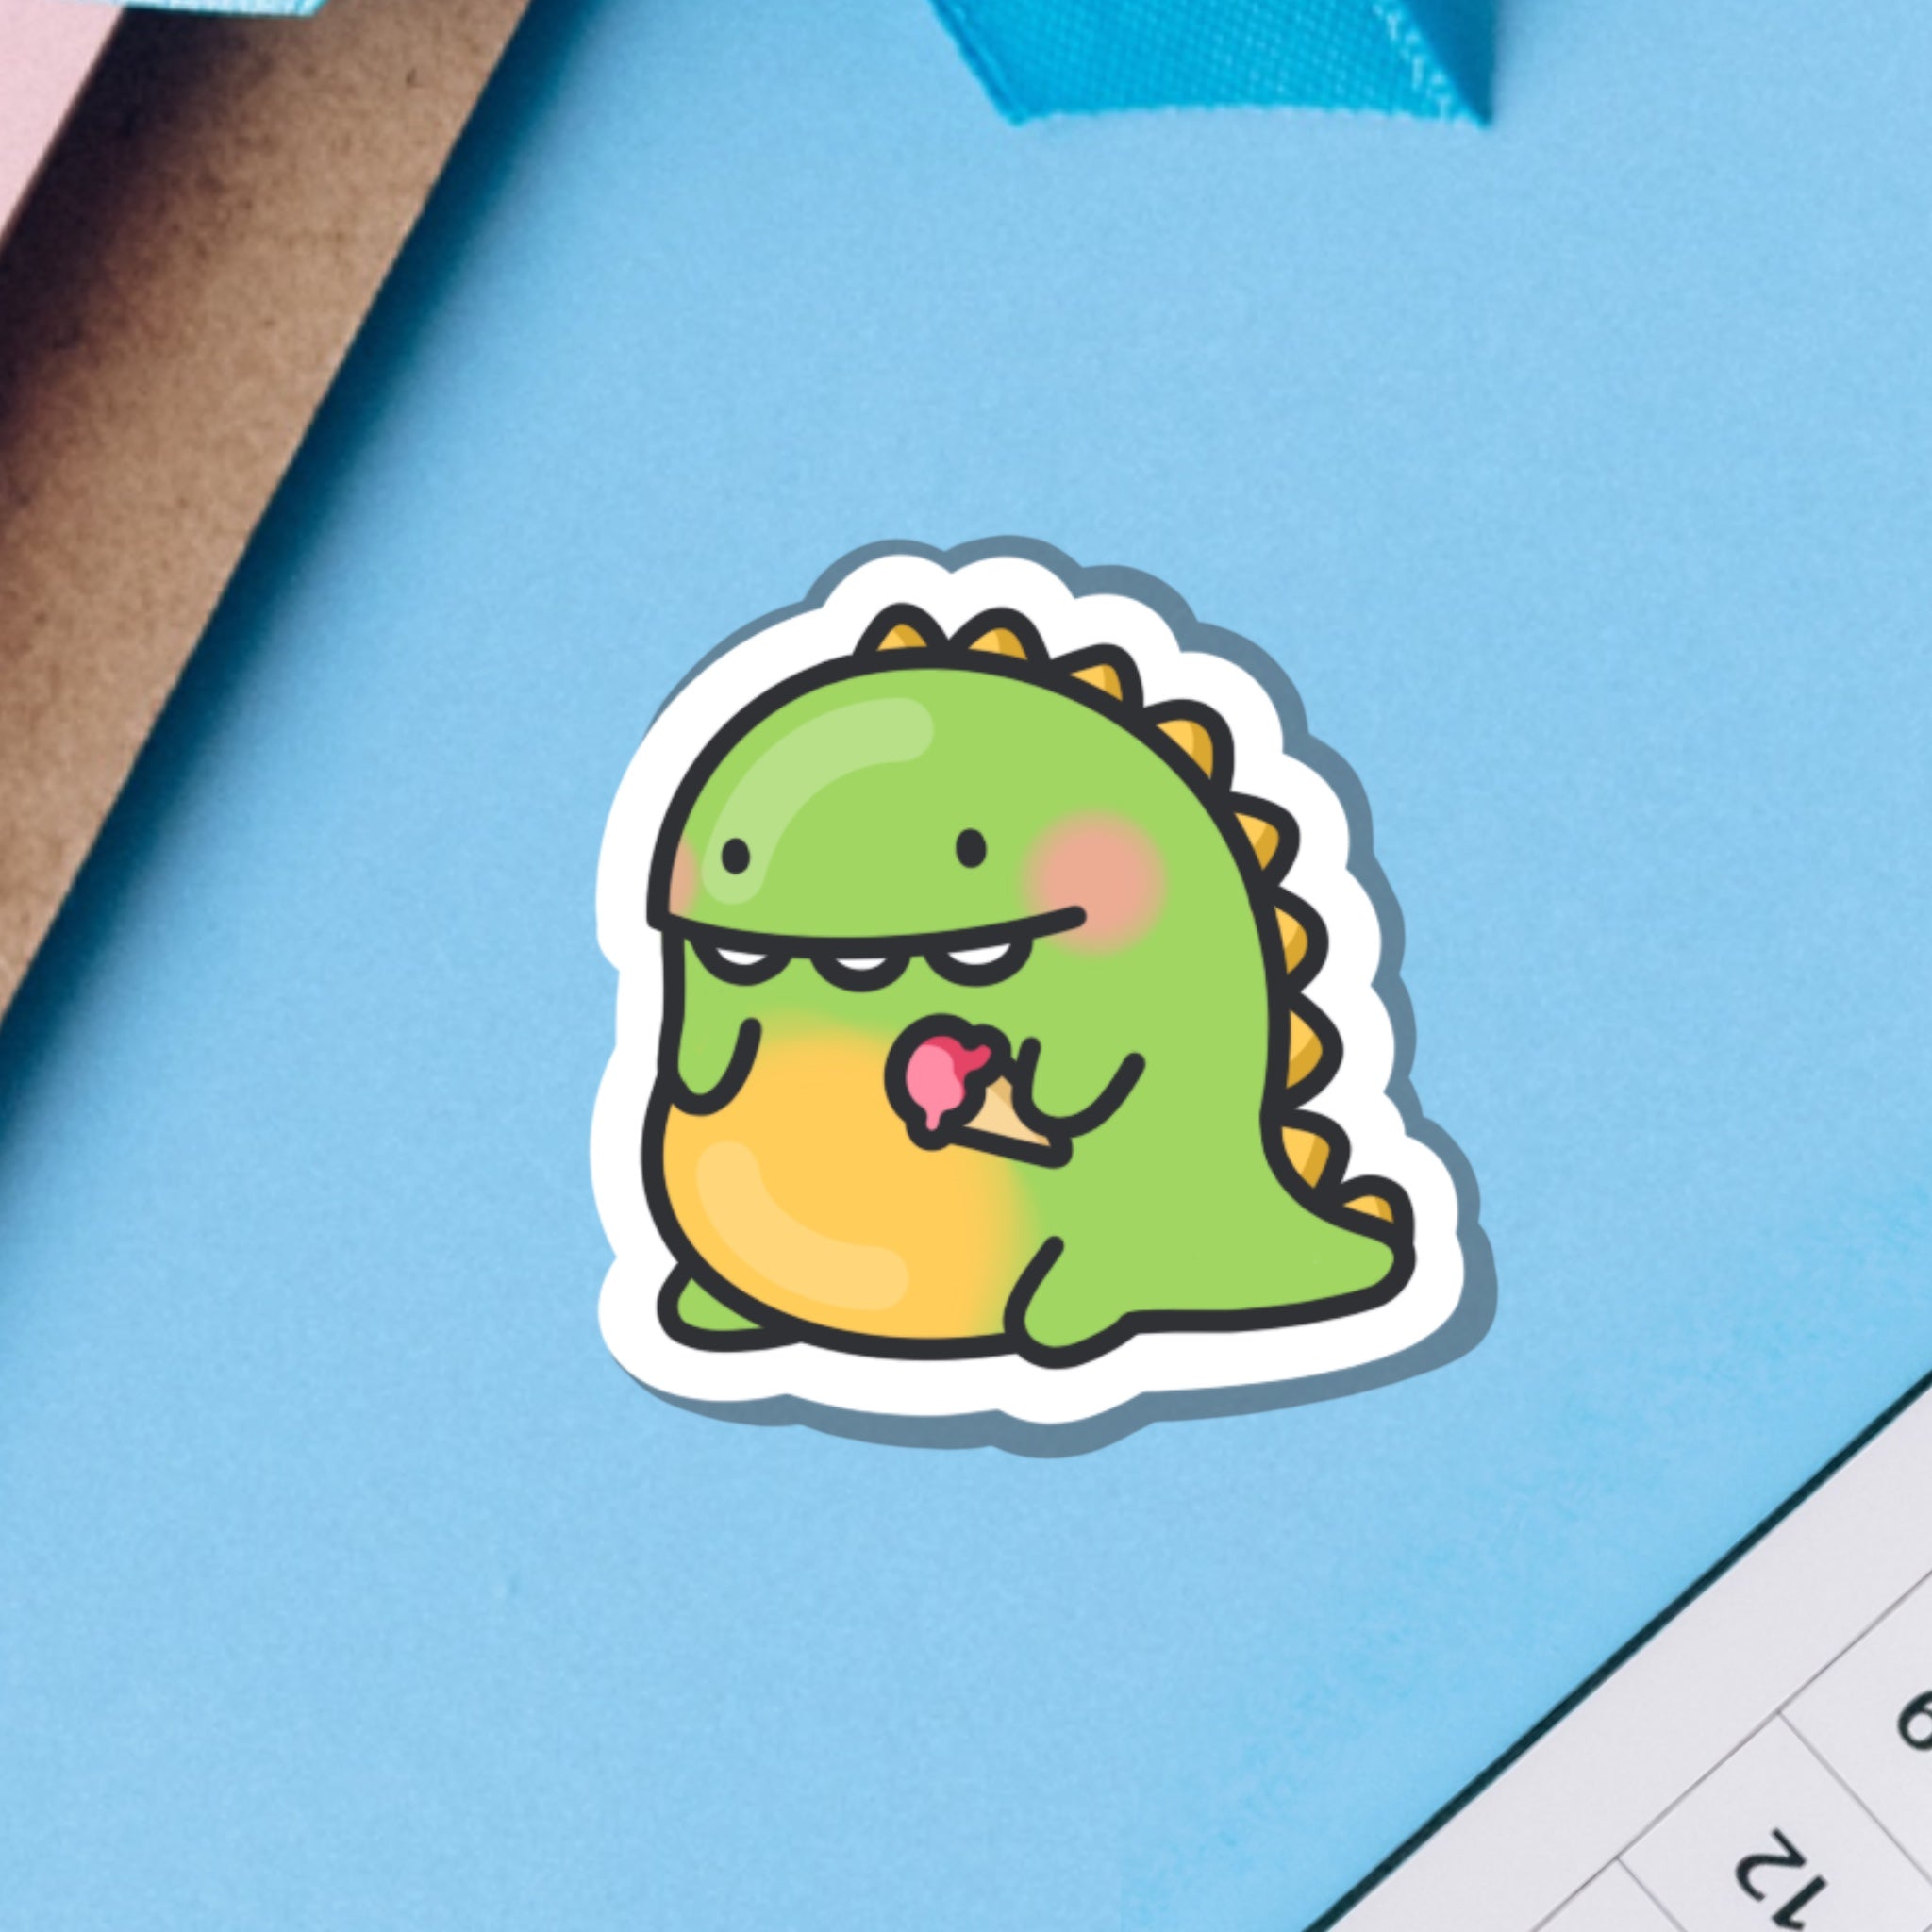 Cute dinosaur sticker on blue background